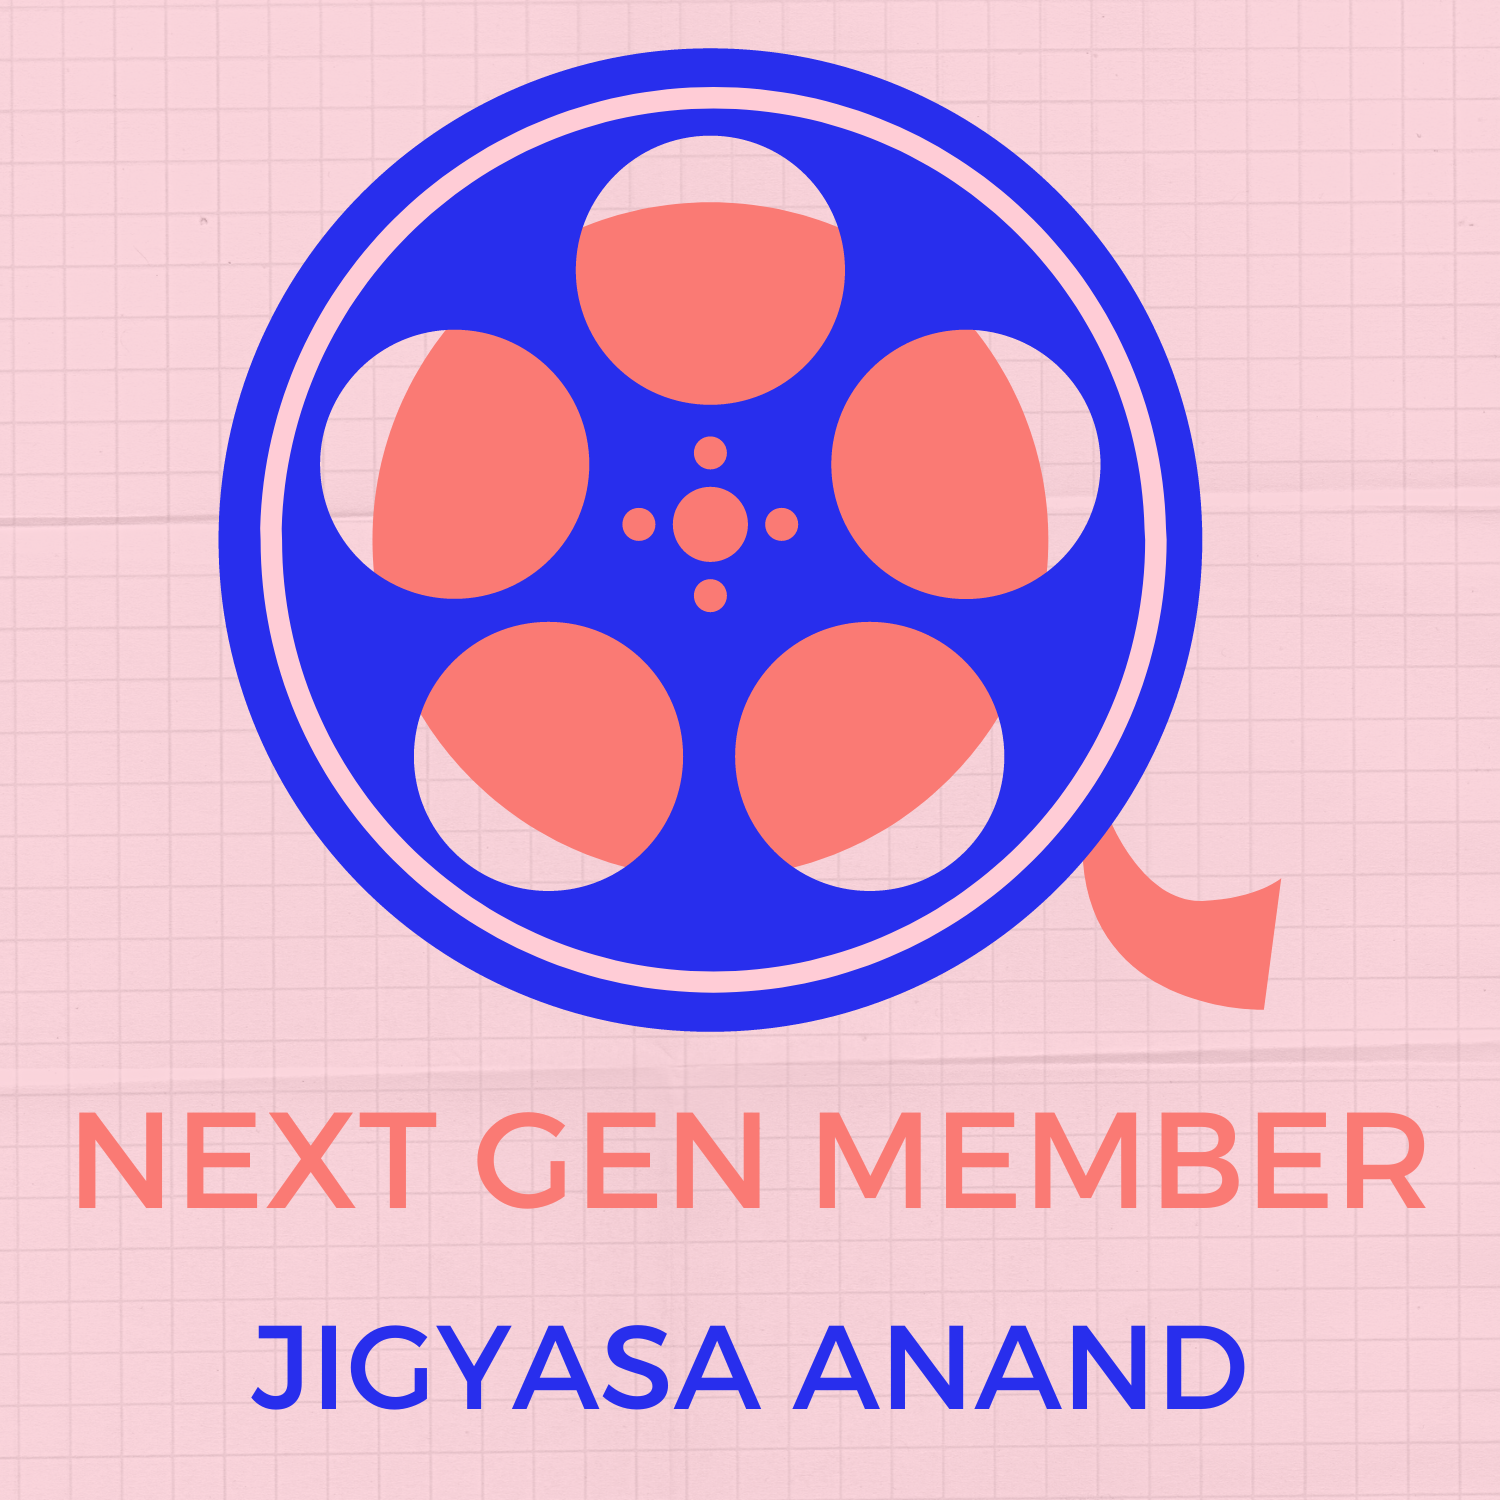 Next Gen Member: Jigyasa Anand